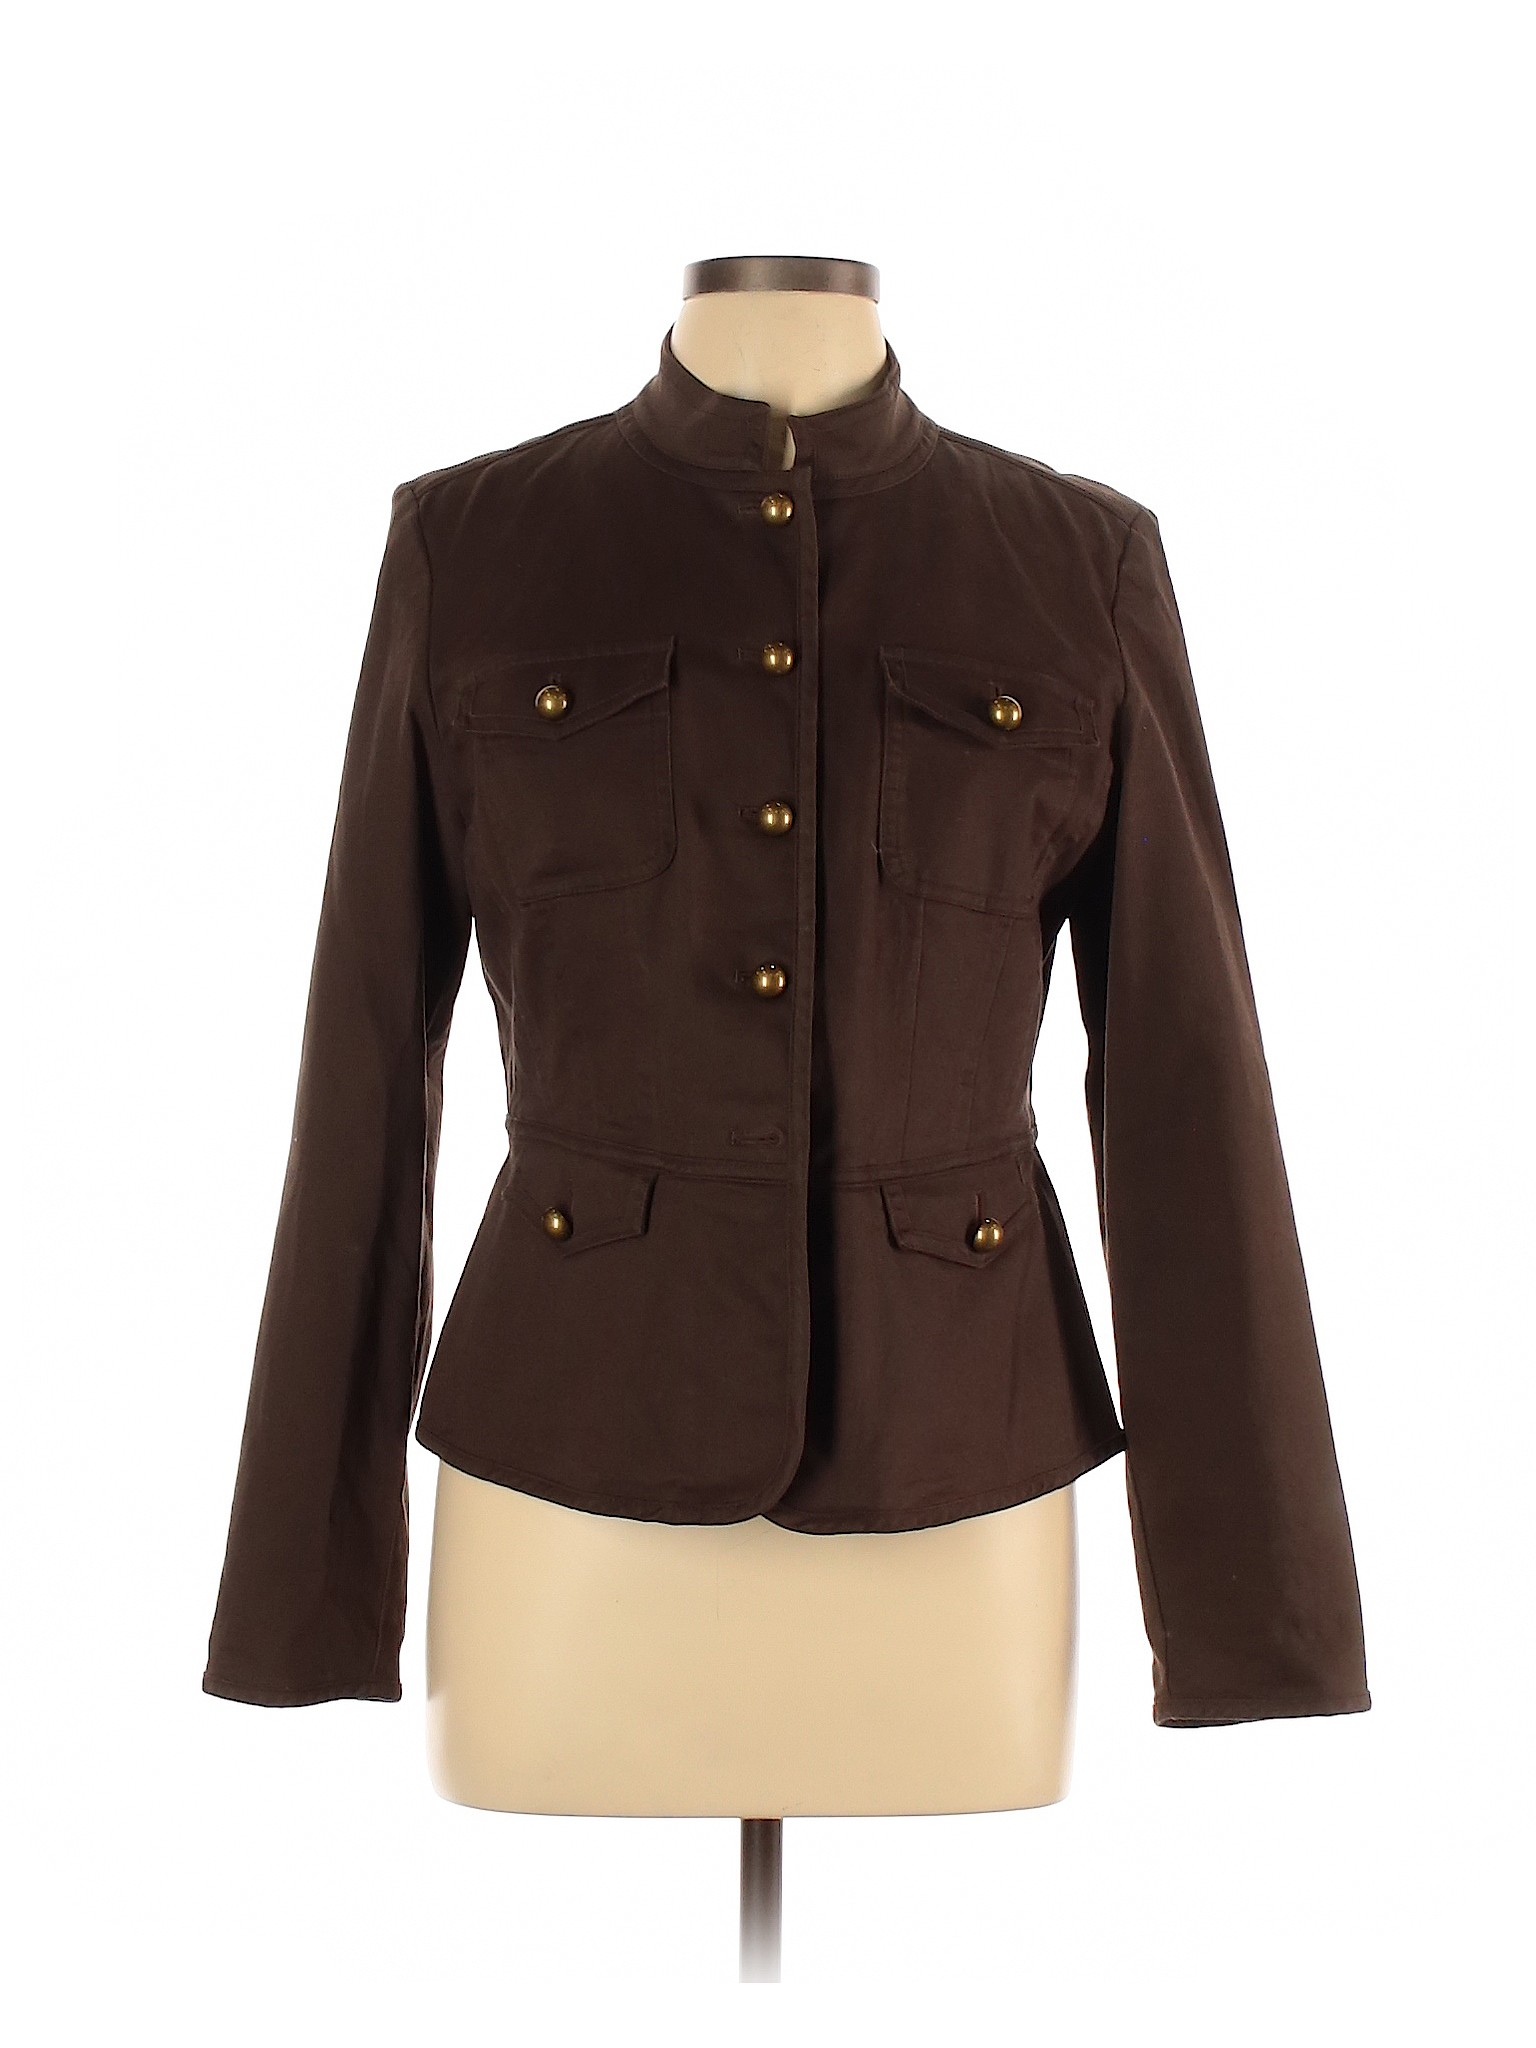 Talbots Women Brown Jacket 10 | eBay